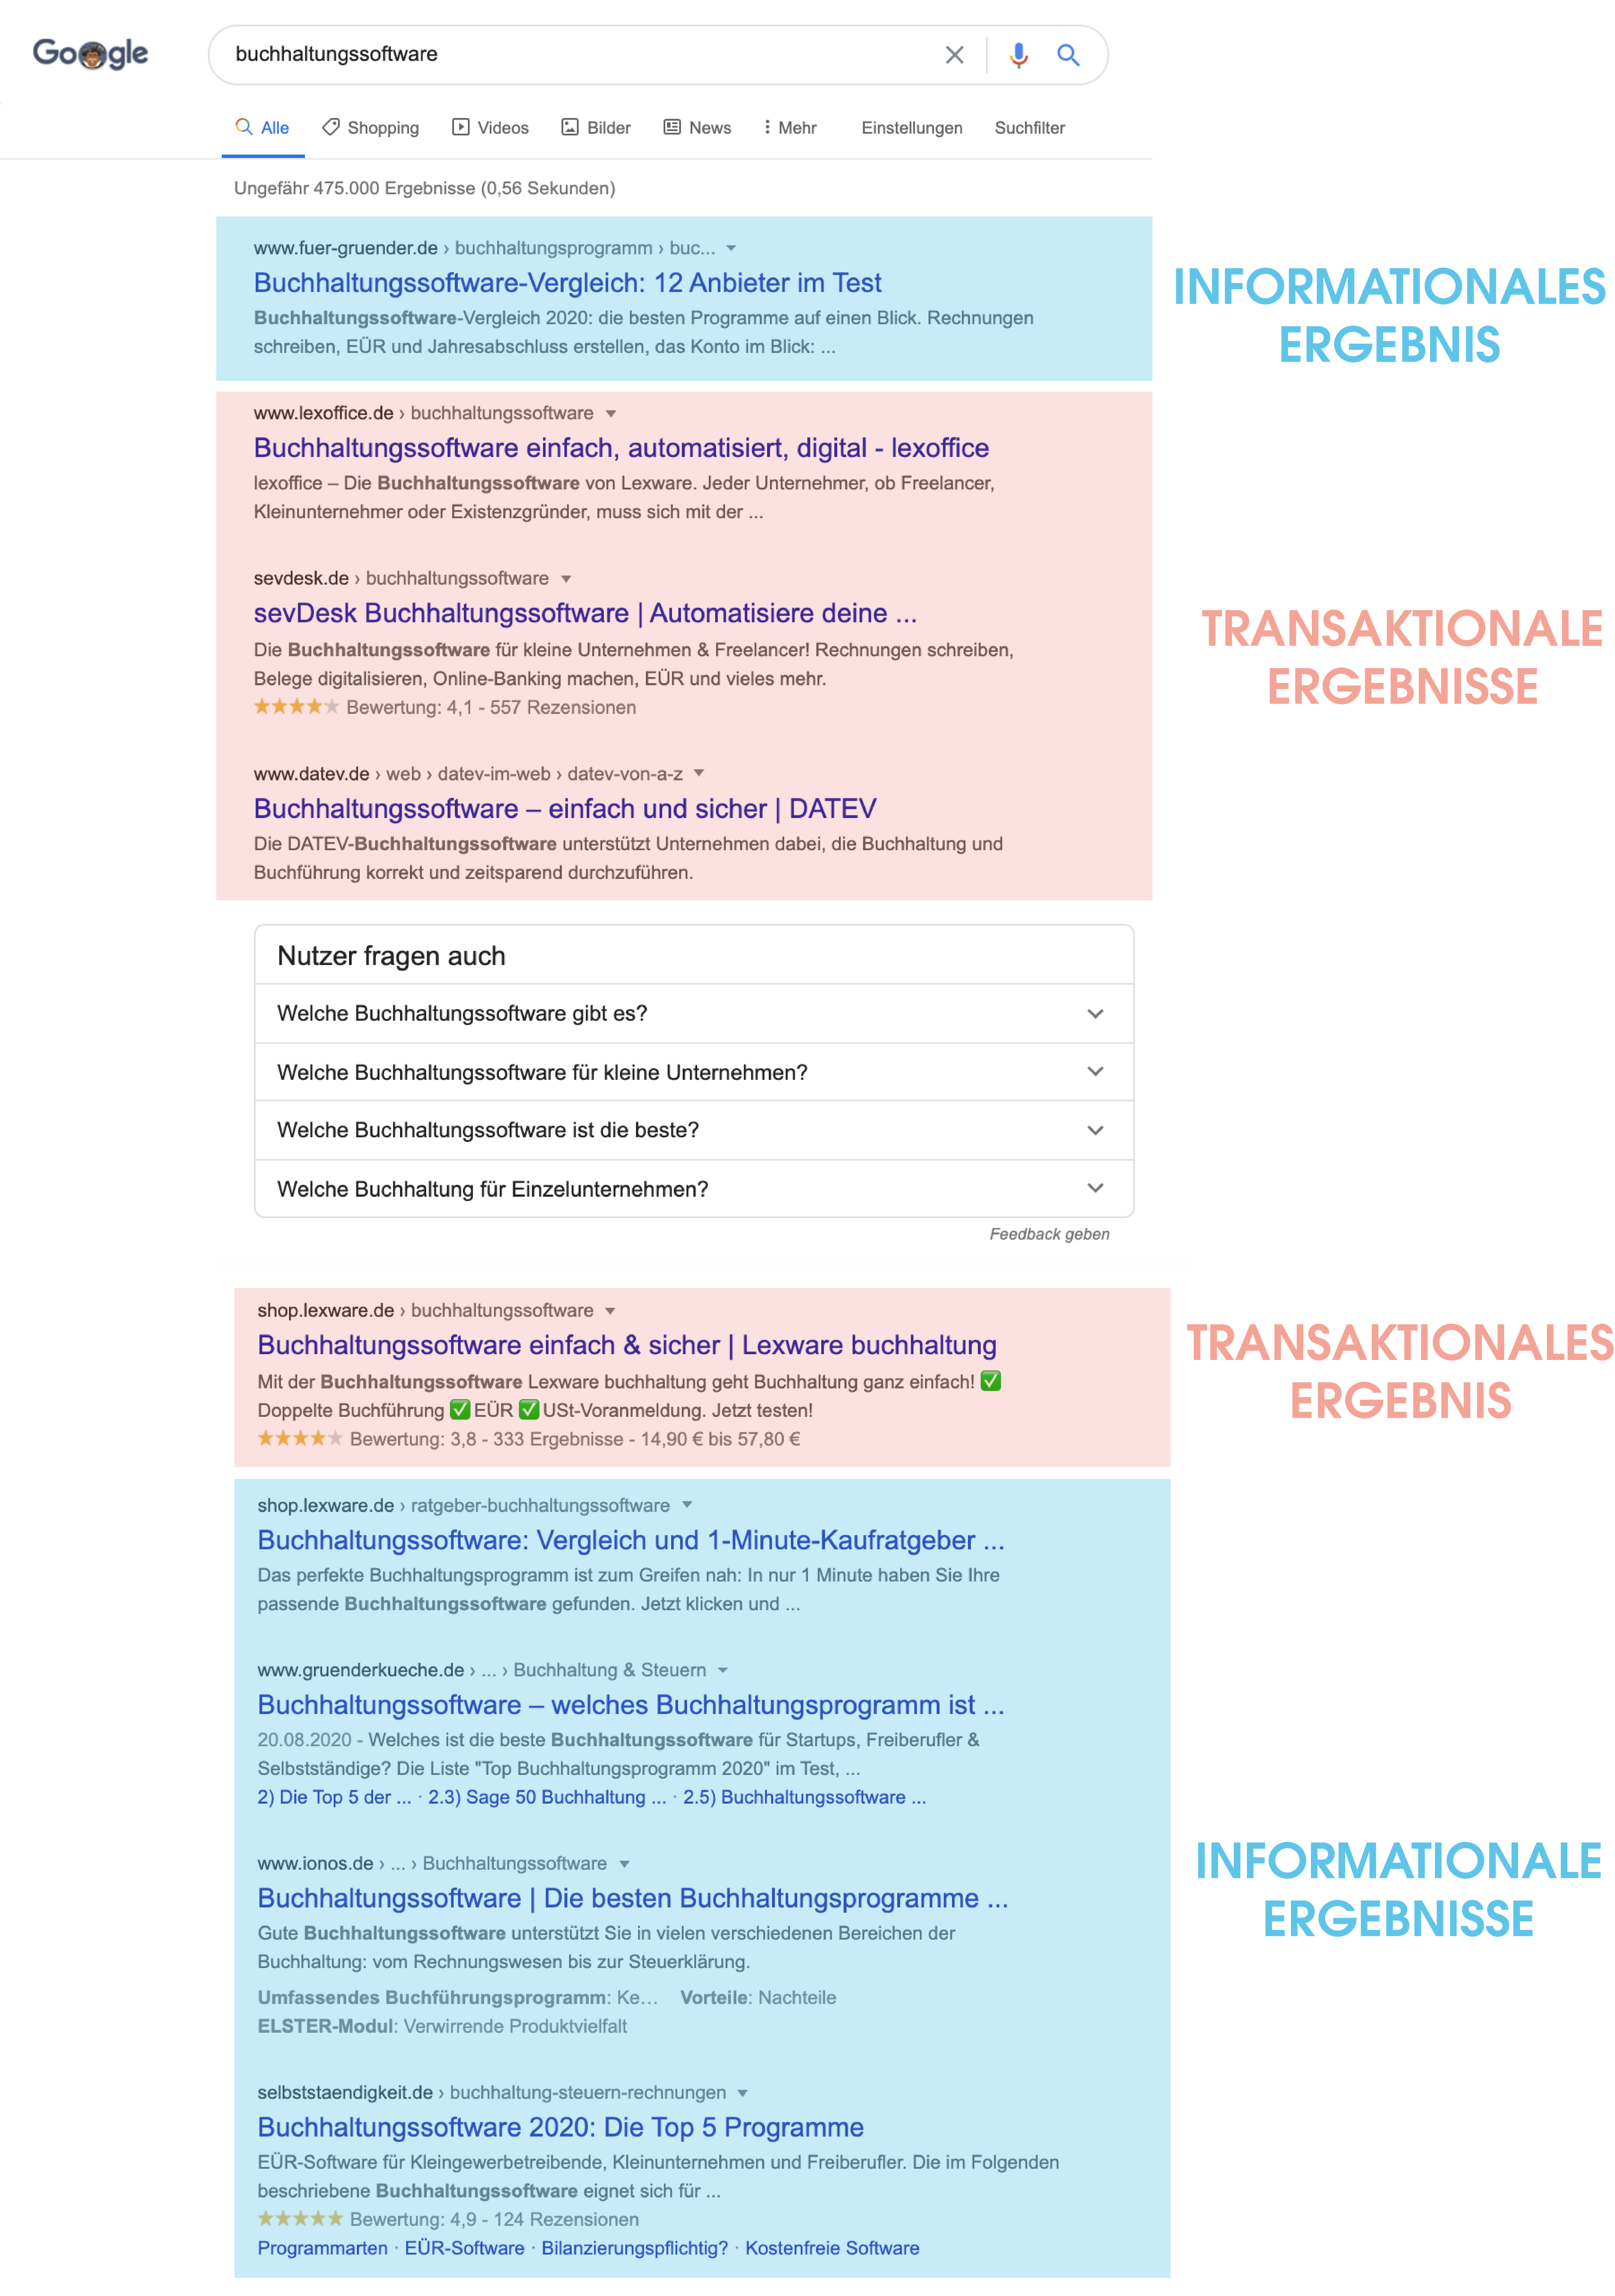 Der Screenshot der ersten Google-Suchergebnisseite zeigt Ergebnisse zur Suchanfrage "Buchhaltungssoftware". Dabei sind die Ergebnisse klar in transaktionale und informationale Ergebnisse einzuordnen. 